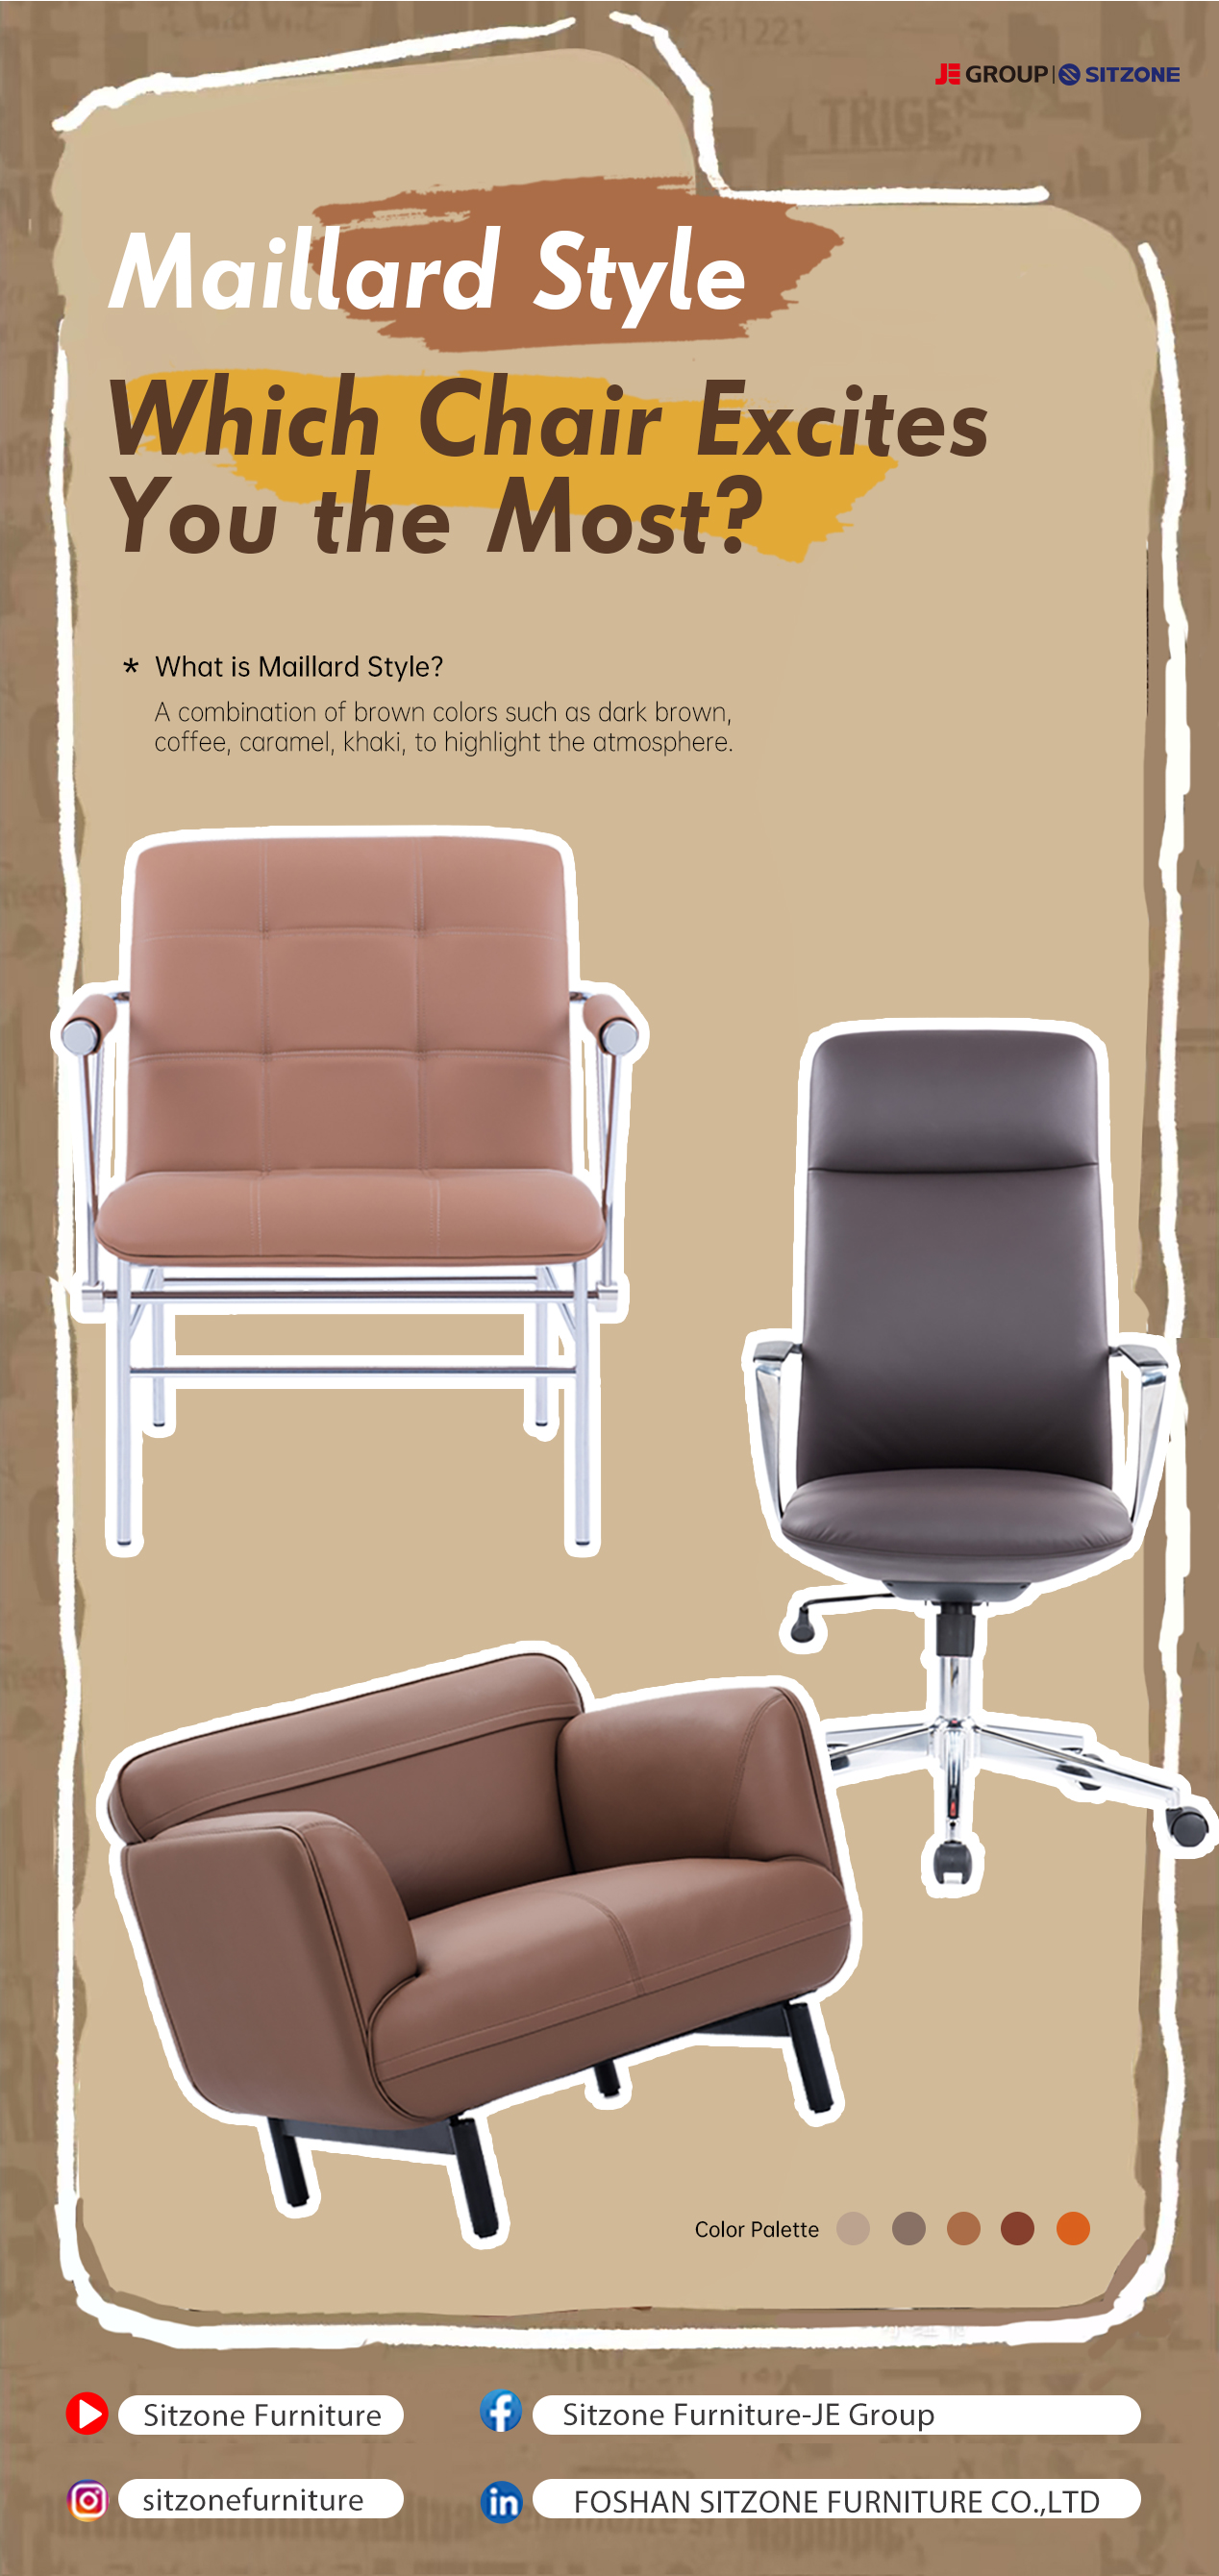 Maillard Style |Ո՞ր աթոռն է ձեզ ամենաշատը հուզում: